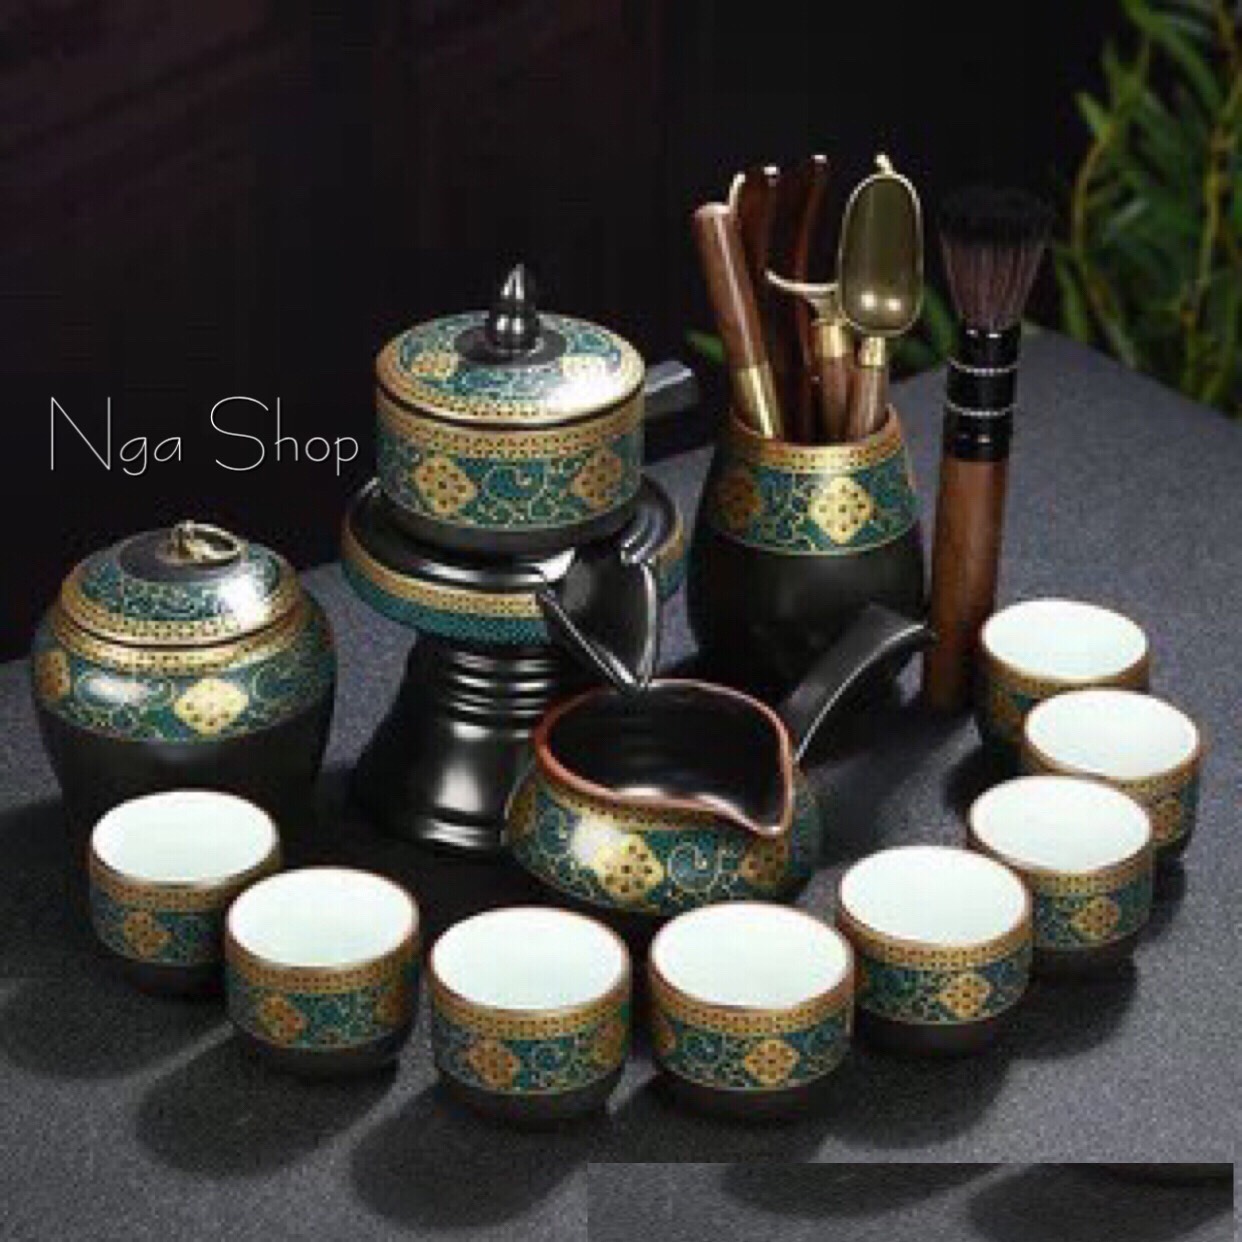 Bộ ấm chén uống trà đẹp sang trọng cối xay Tử sa gốm sứ cao cấp,phong cách pha trà đạo cổ xưa độc lạ 19 chi tiết hoa cẩm vần cổ lòng chén trắng